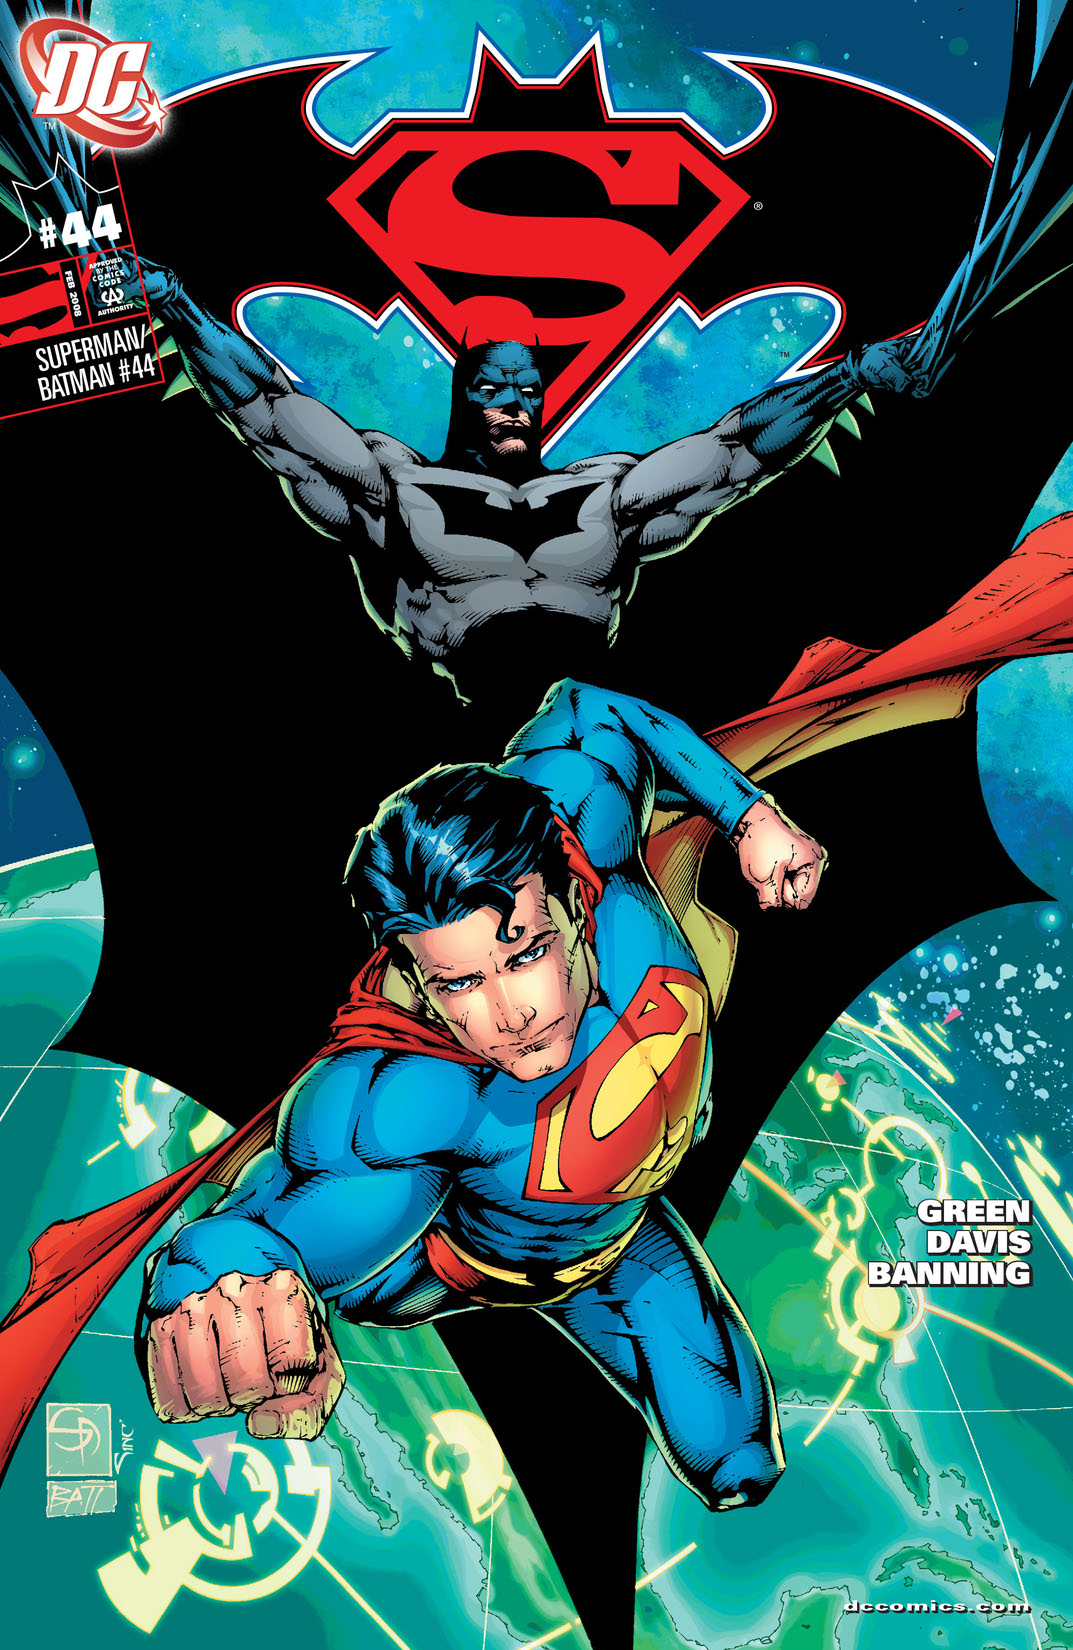 Superman/Batman #44 preview images